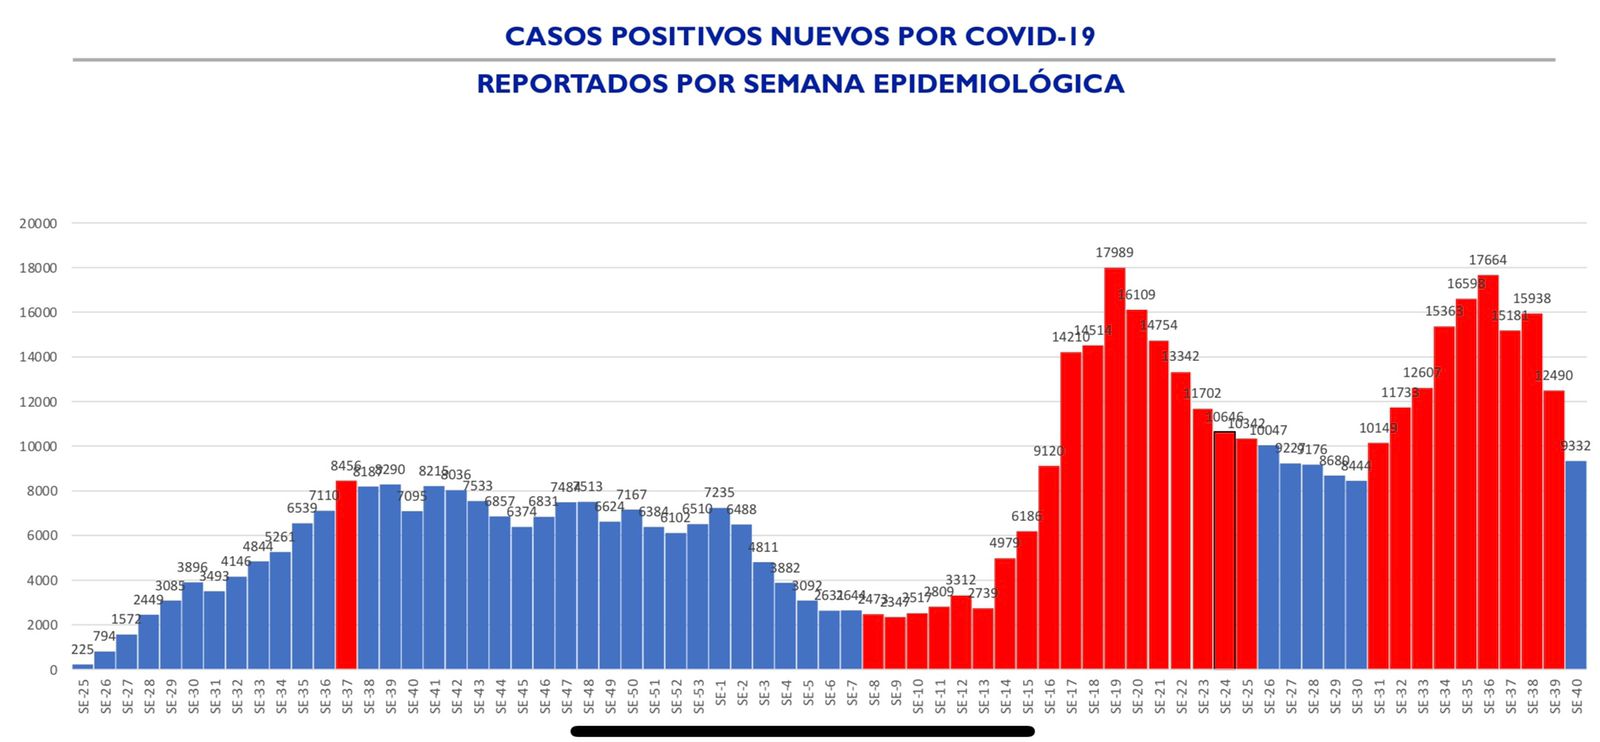 Disminuyen casos, hospitalizaciones y mortalidad asociada a COVID-19 durante semana epidemiológica 40